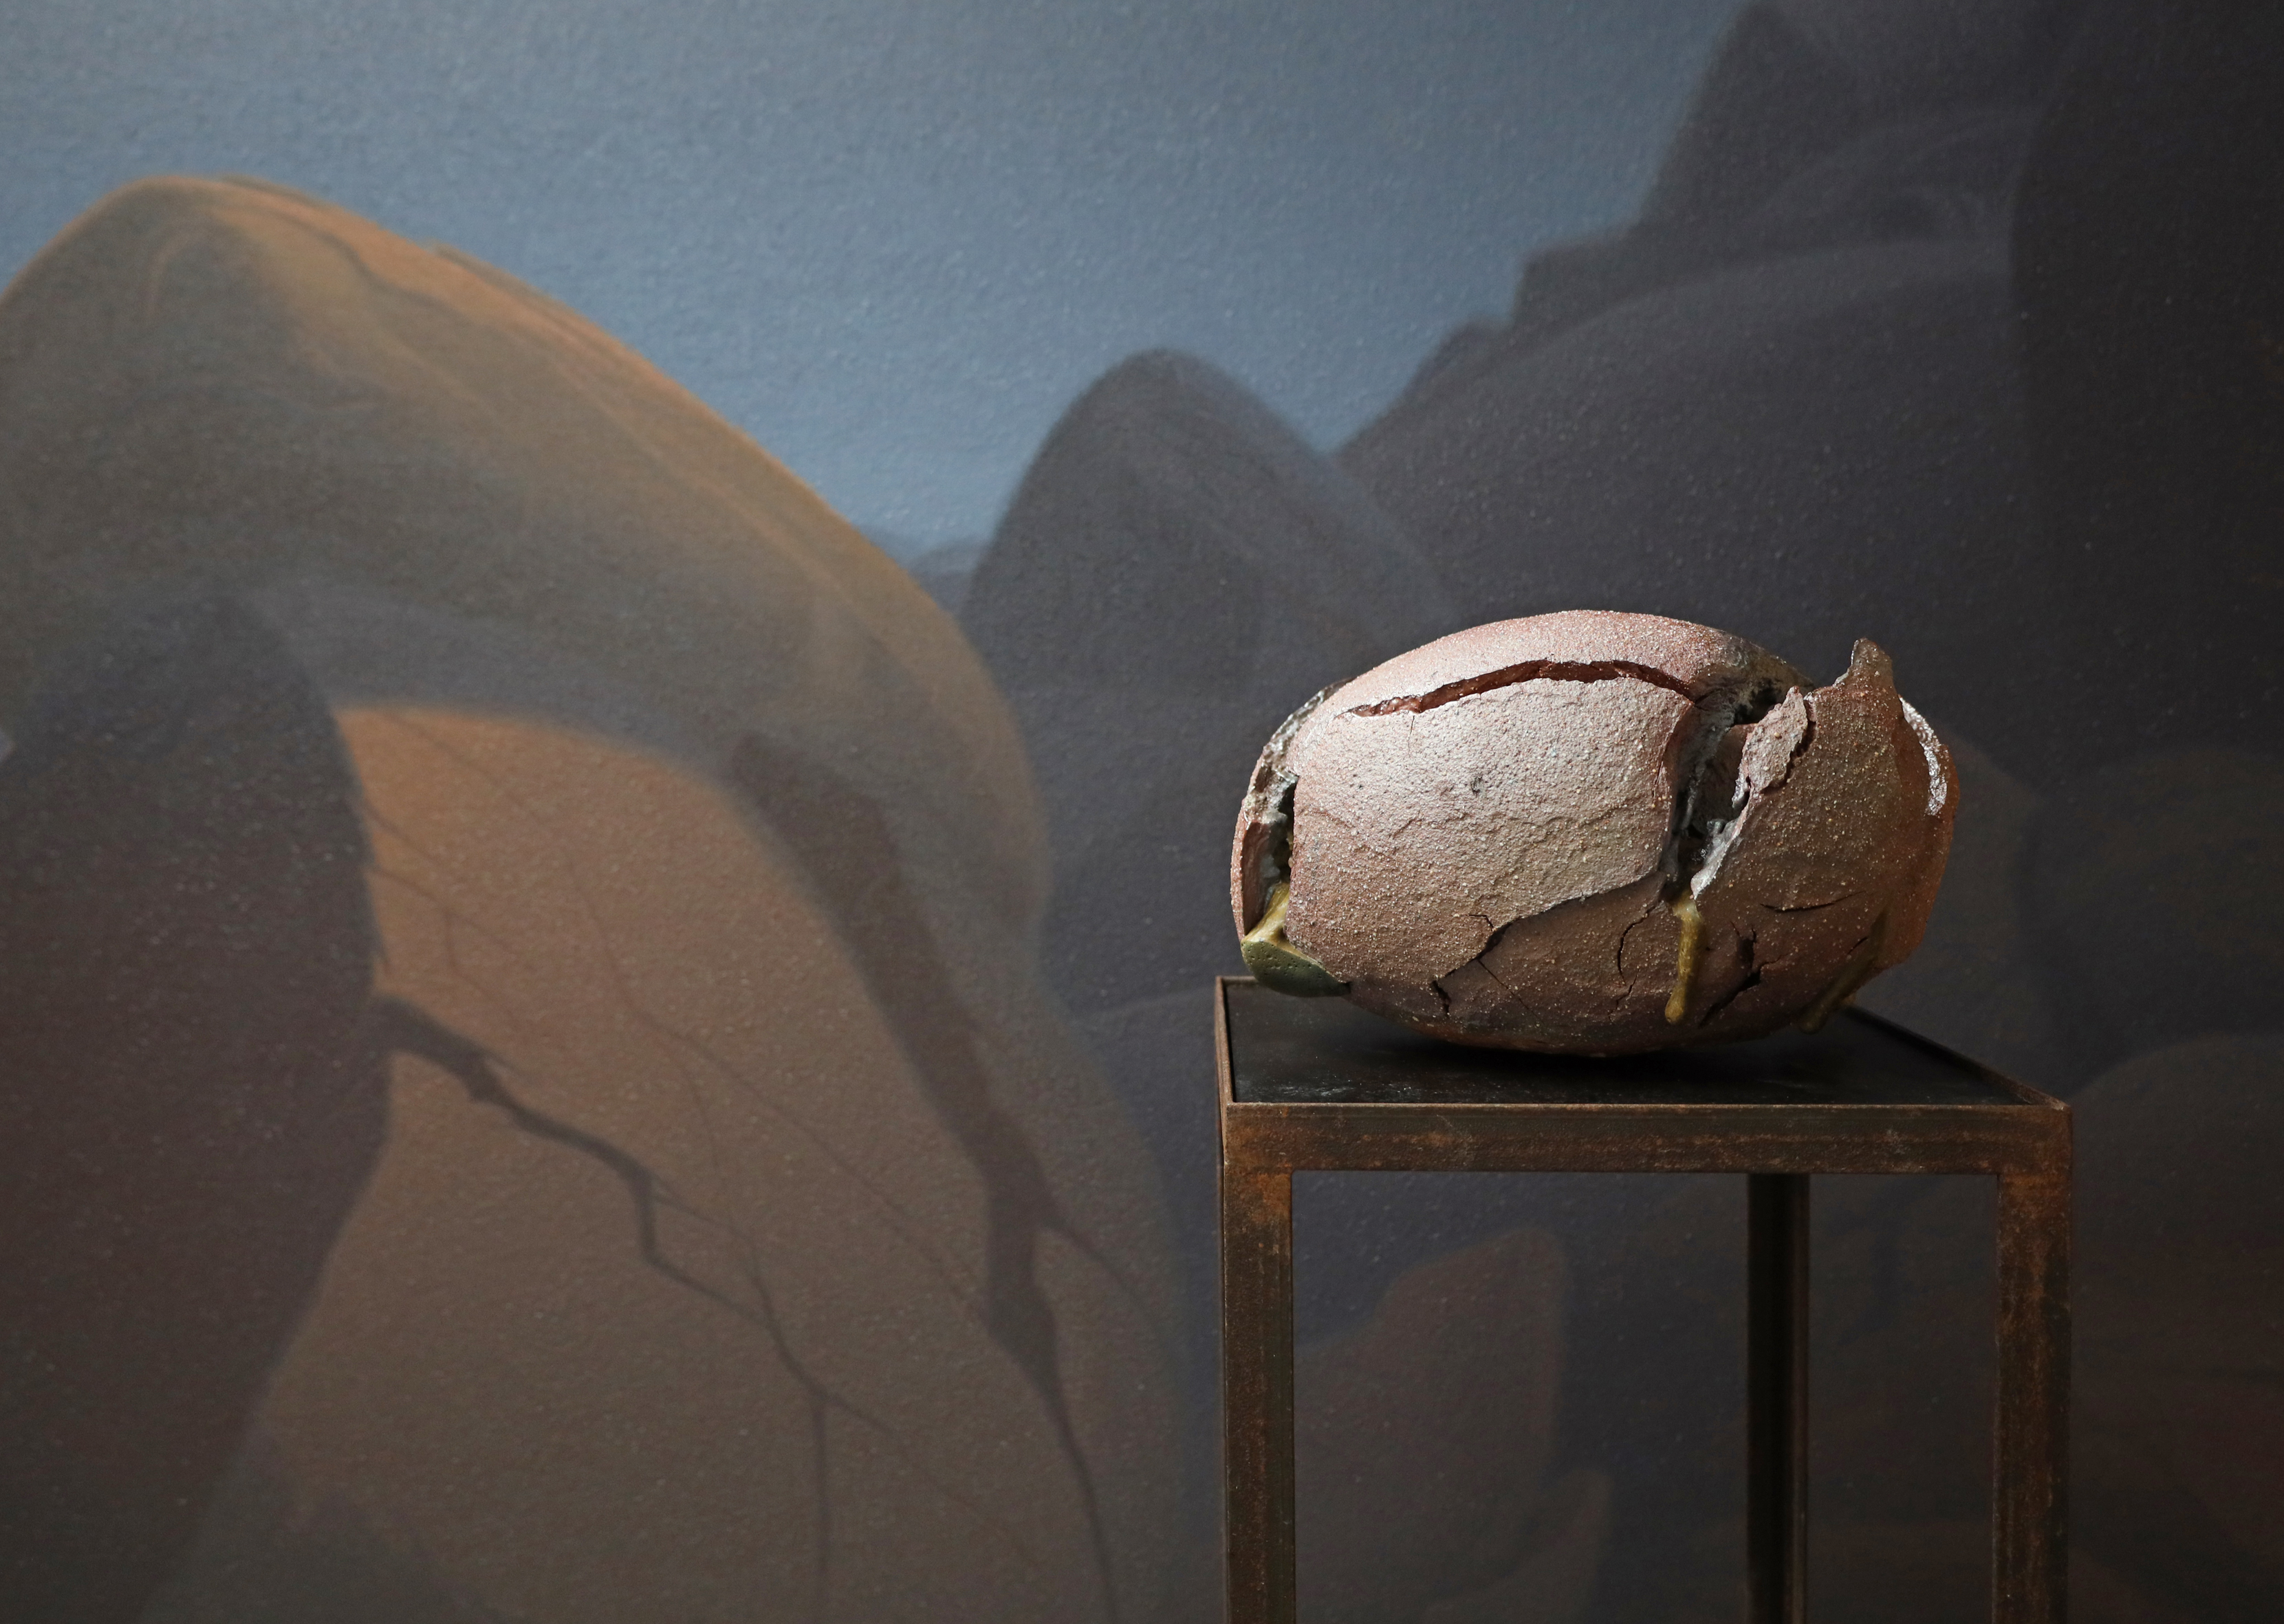 ovales Keramik-Objekt vor gemalter Wüstenlandschaft in Braun und Blau